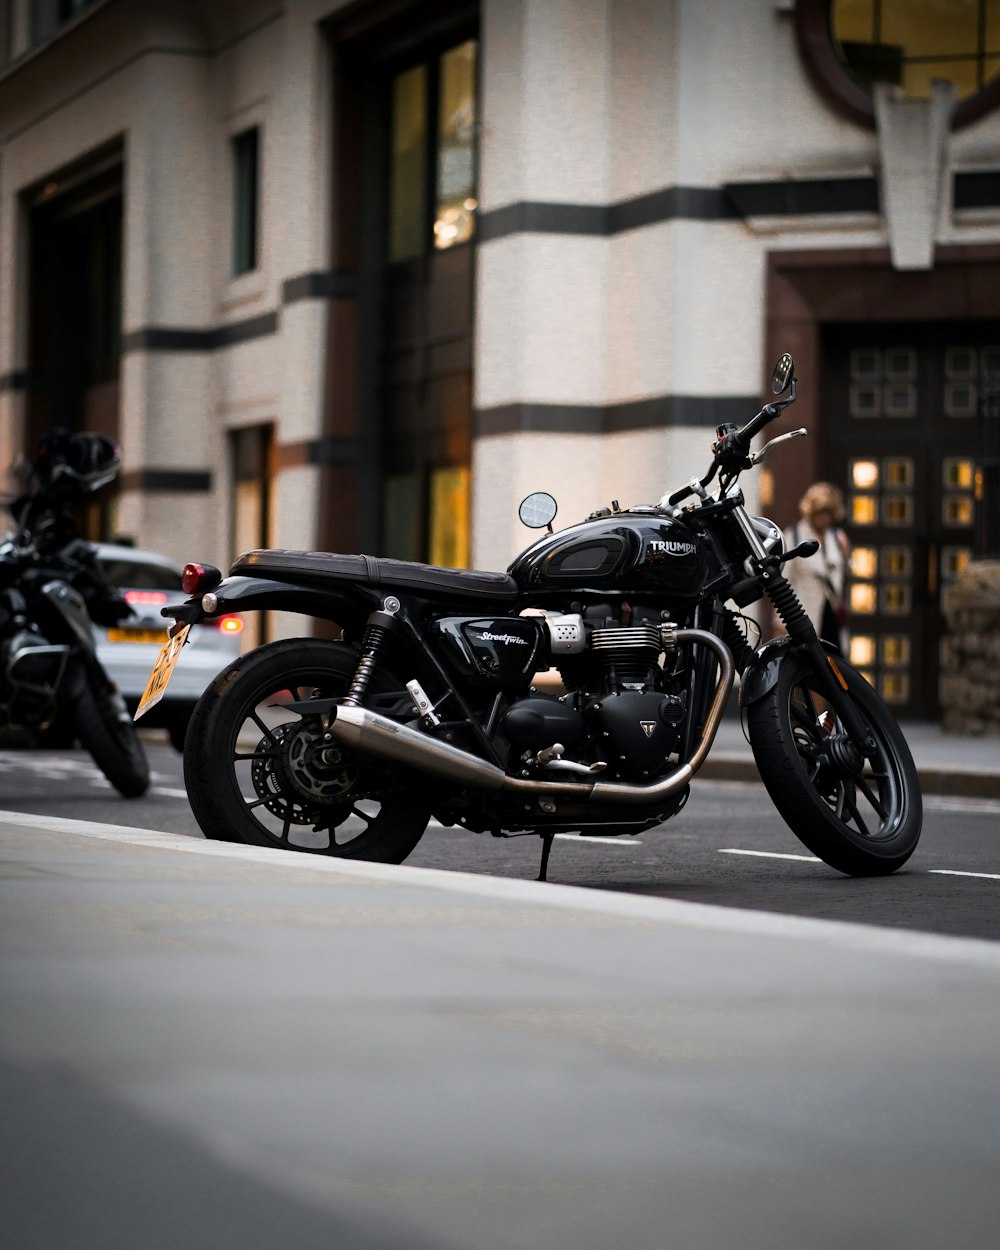 black cruiser motorcycle